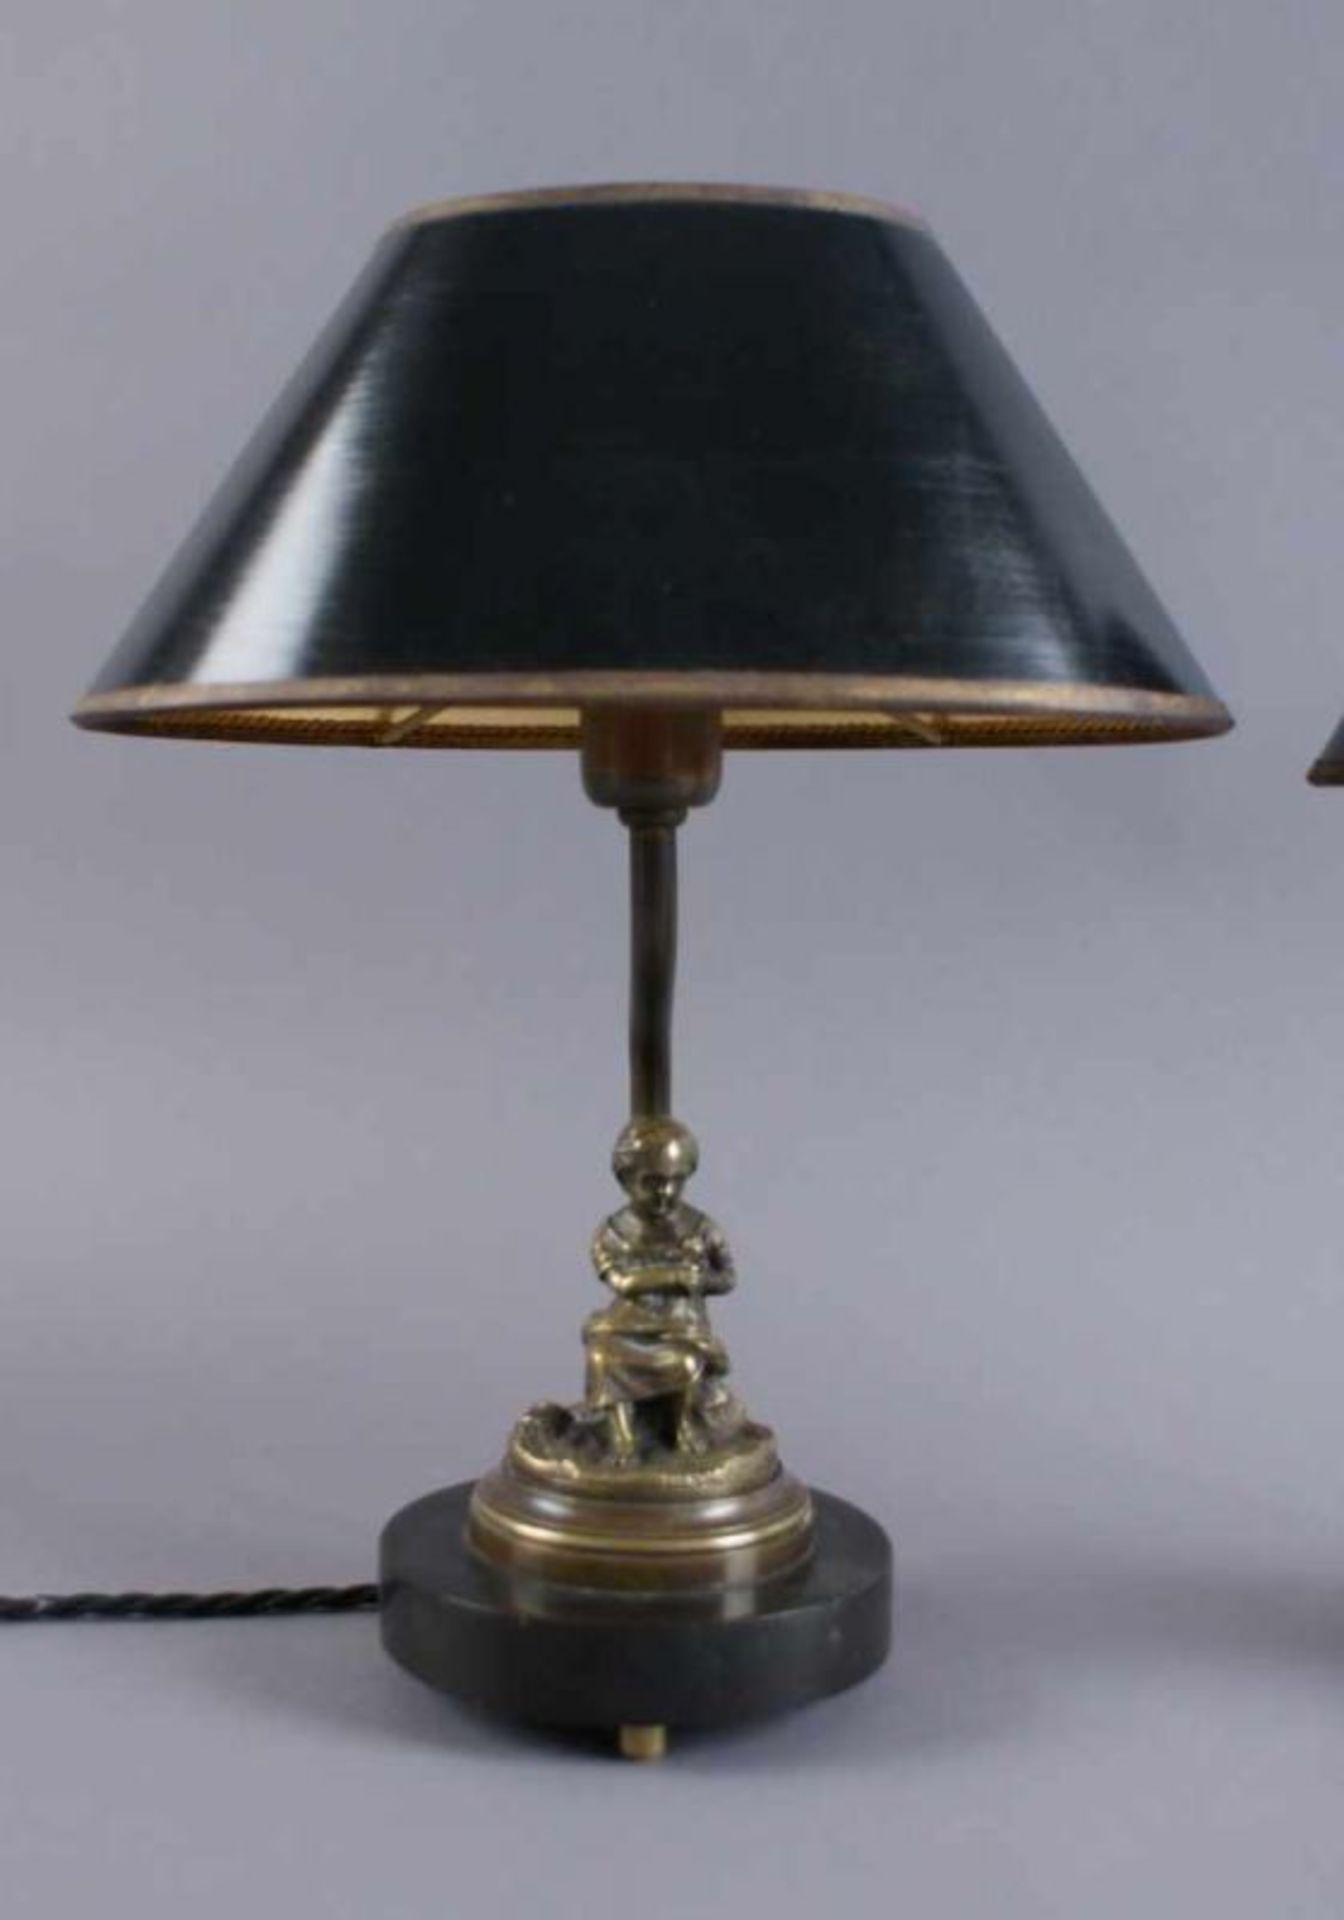 Zwei liebliche Lampen mit Bronzeskulpturen auf Marmorsockel, 19. JH, beschädigt, H je 30 cm 20. - Bild 2 aus 6